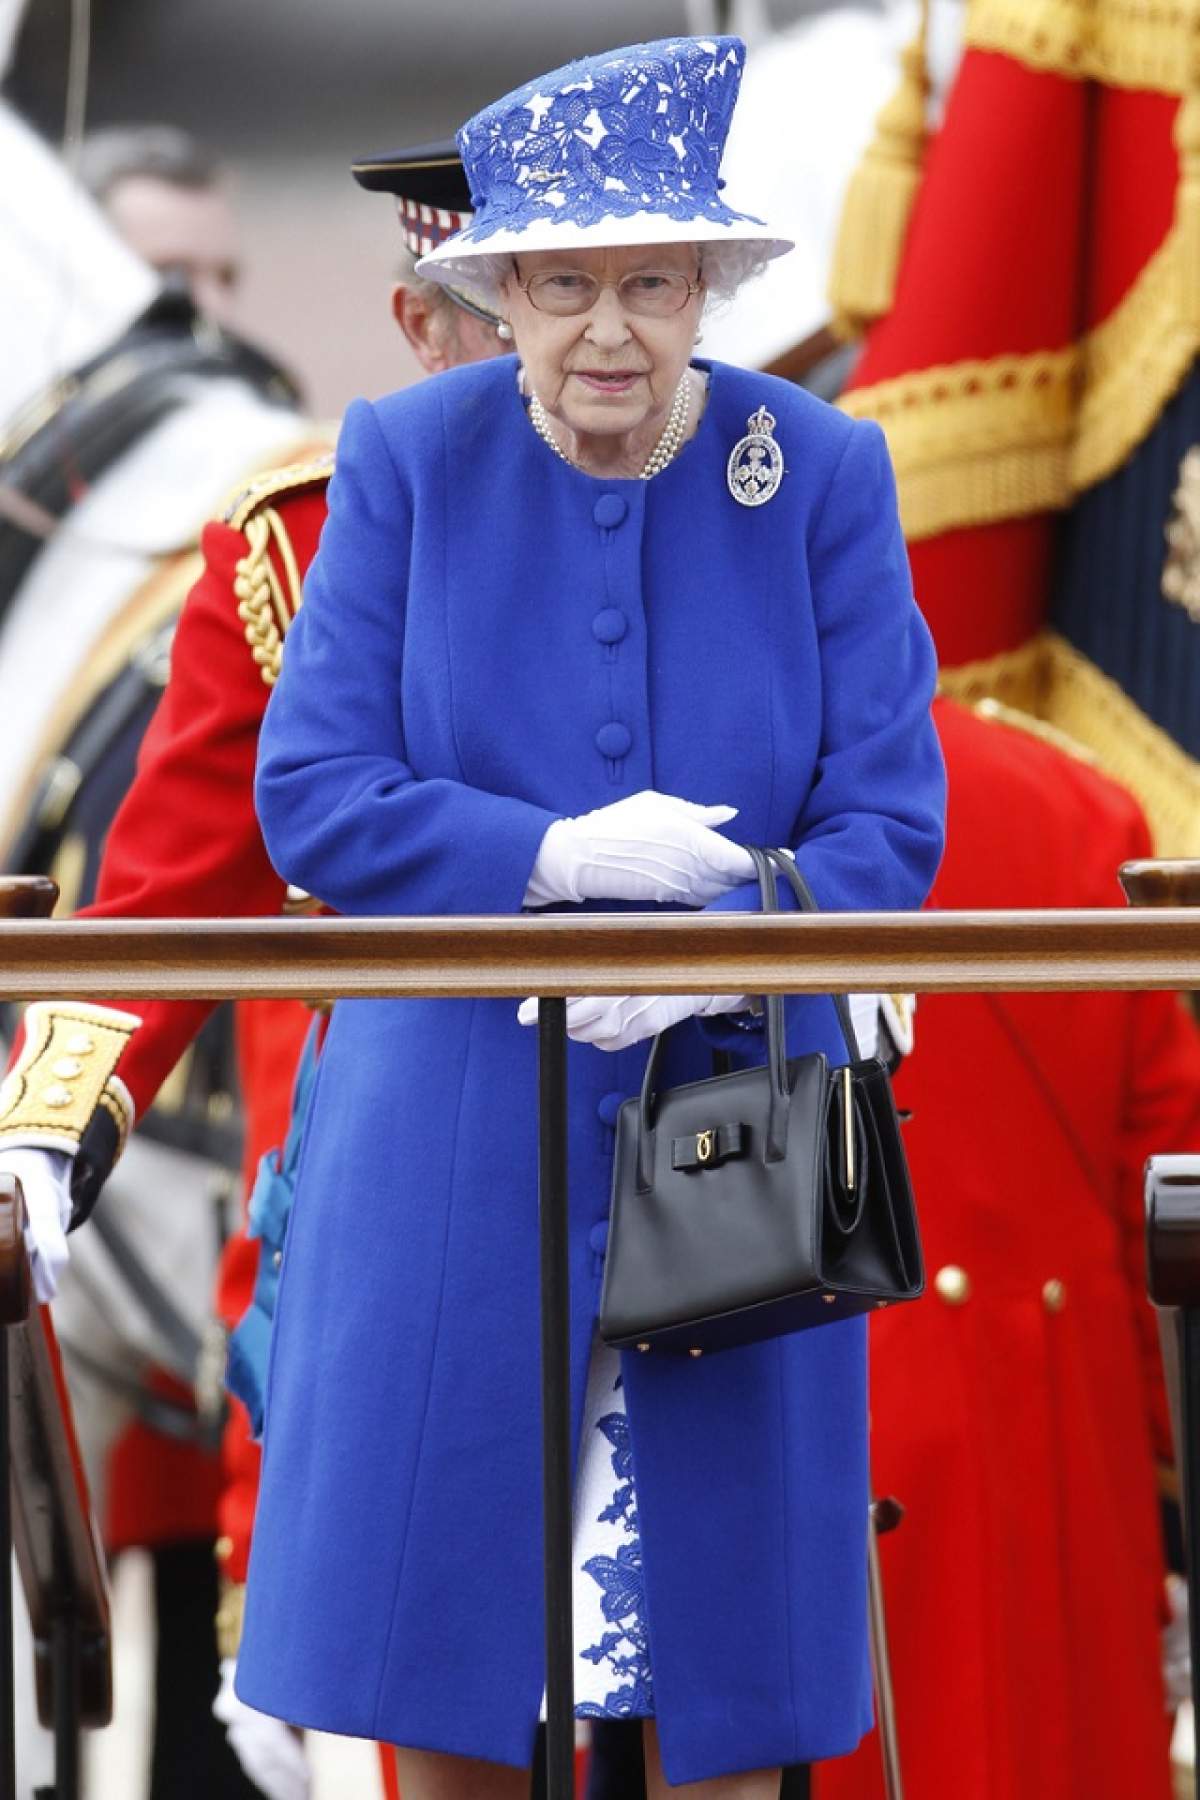 FOTO / Ce bunicuţă haioasă e Regina Elisabeta a II a! Dacă ai vedea-o aşa pe stradă, facem pariu că nu ai şti cine e